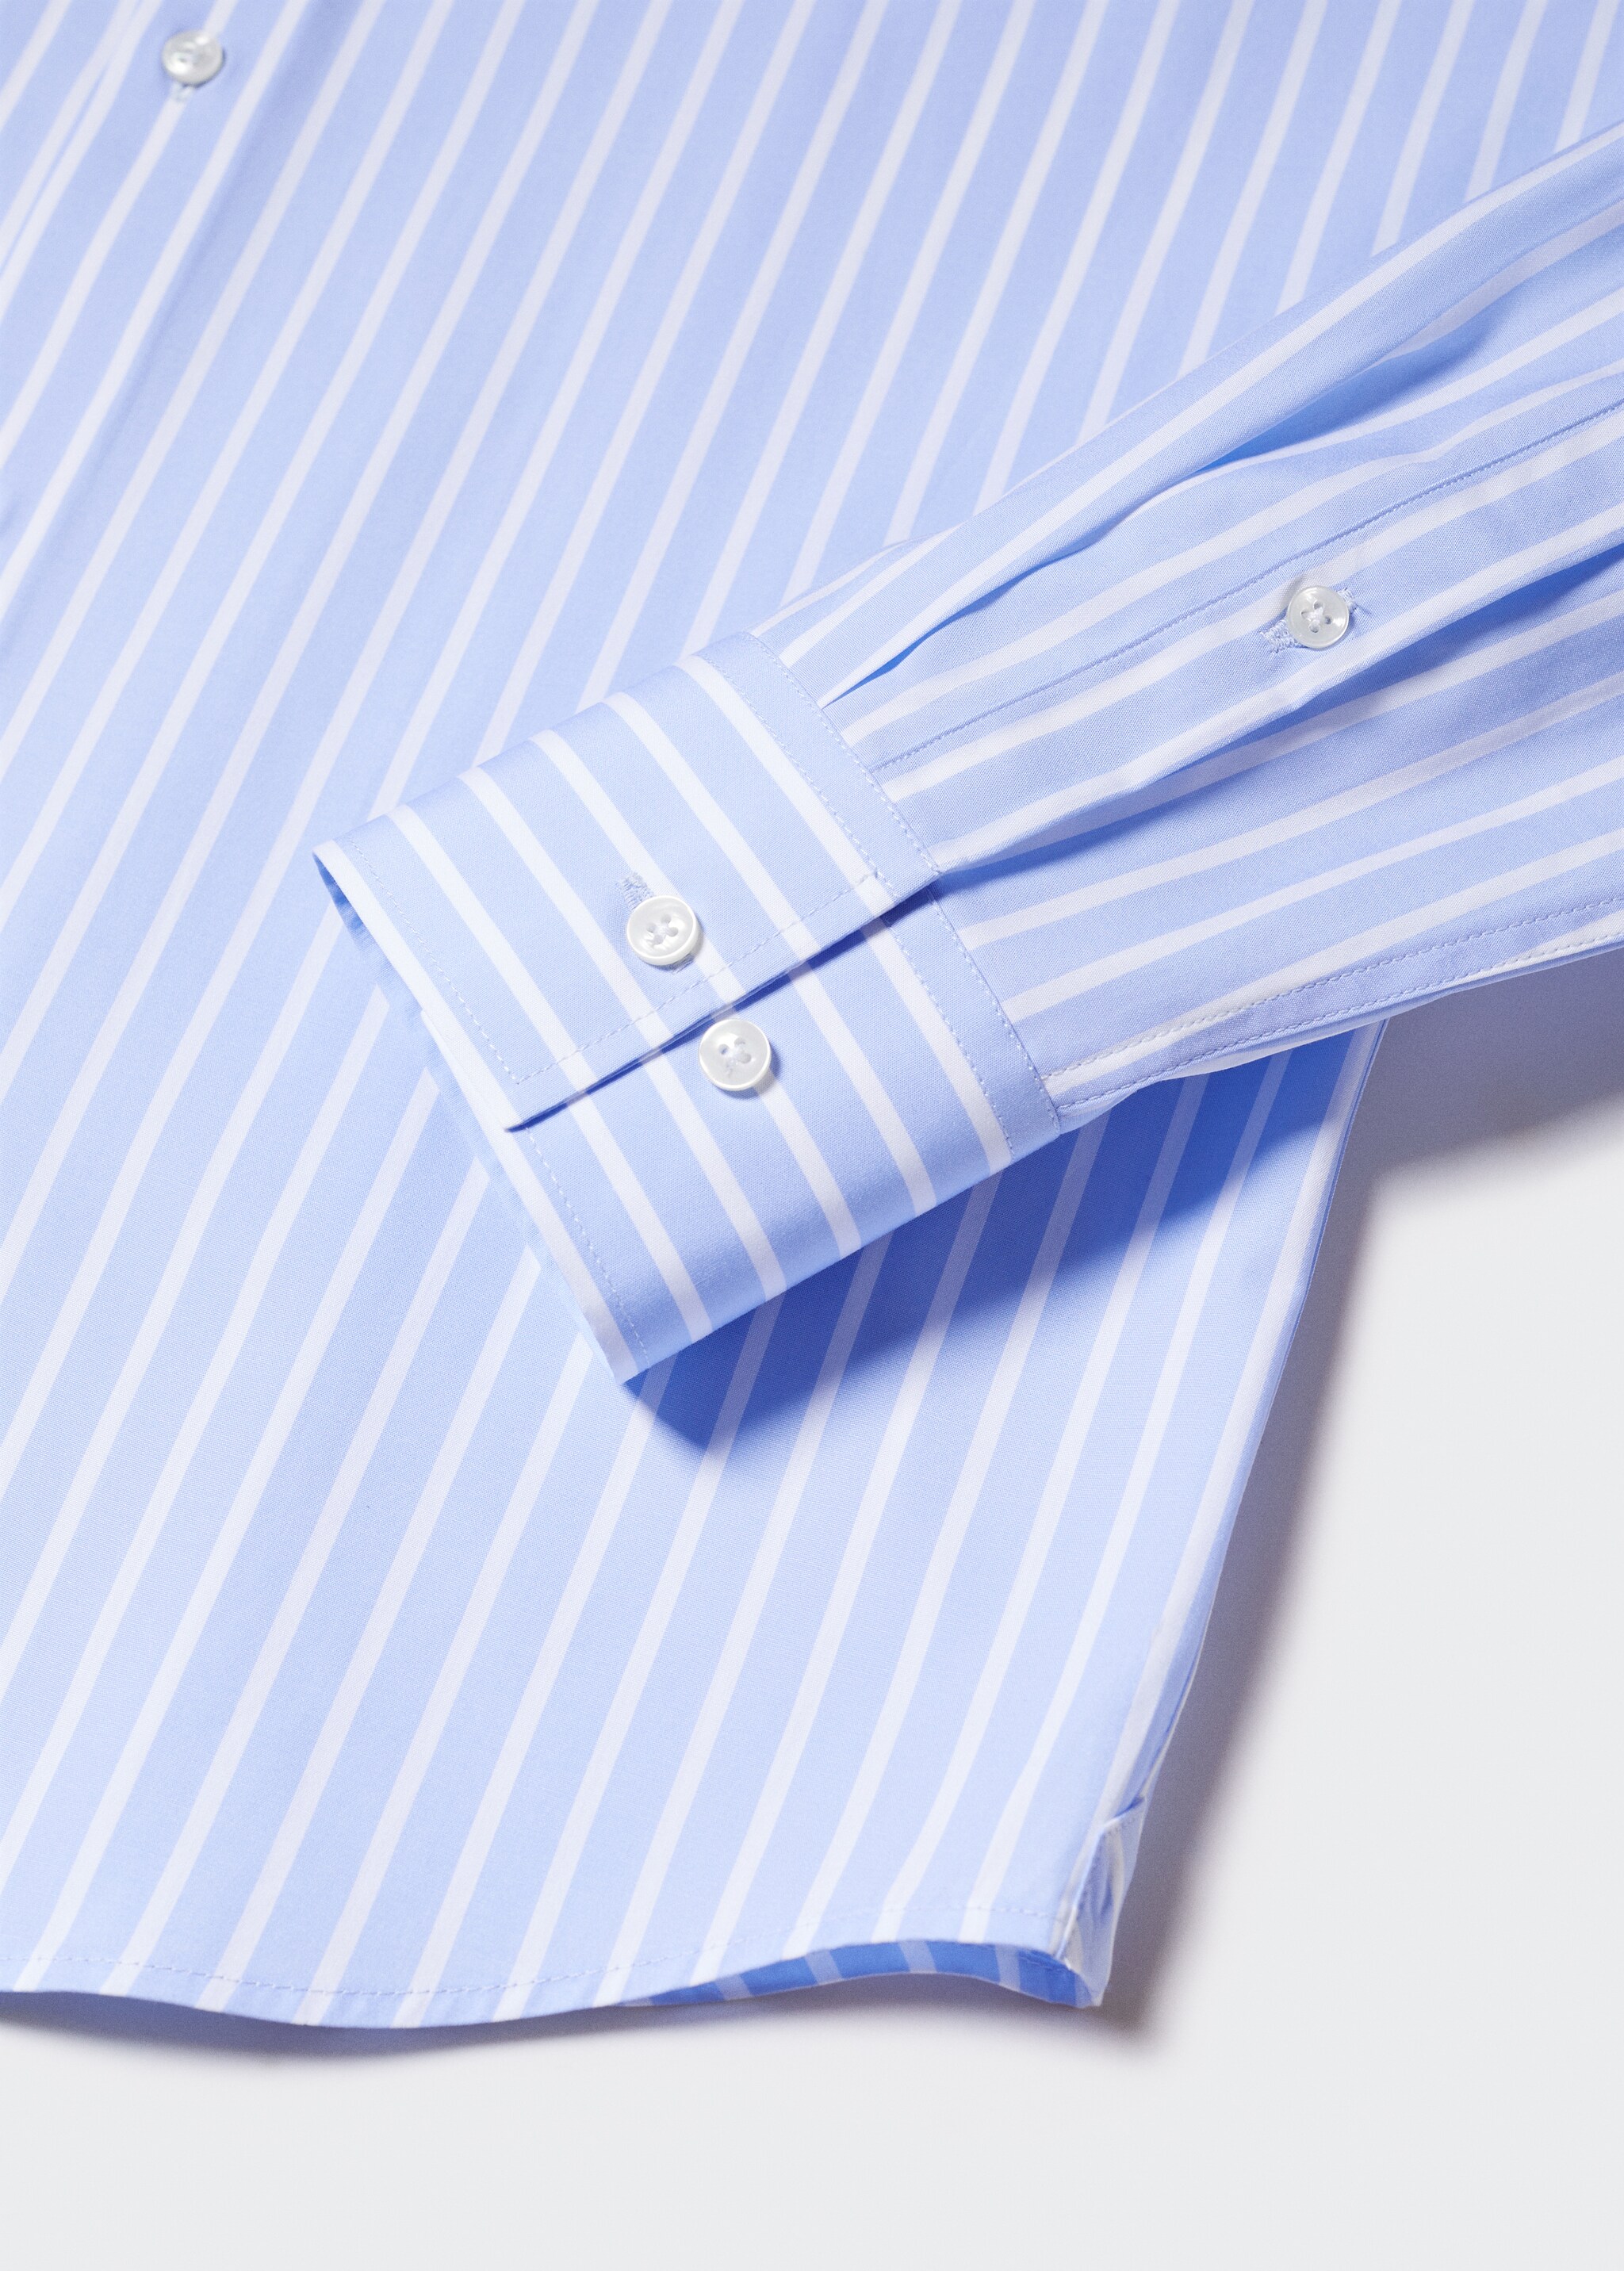 Slim fit cotton suit shirt - Details of the article 8